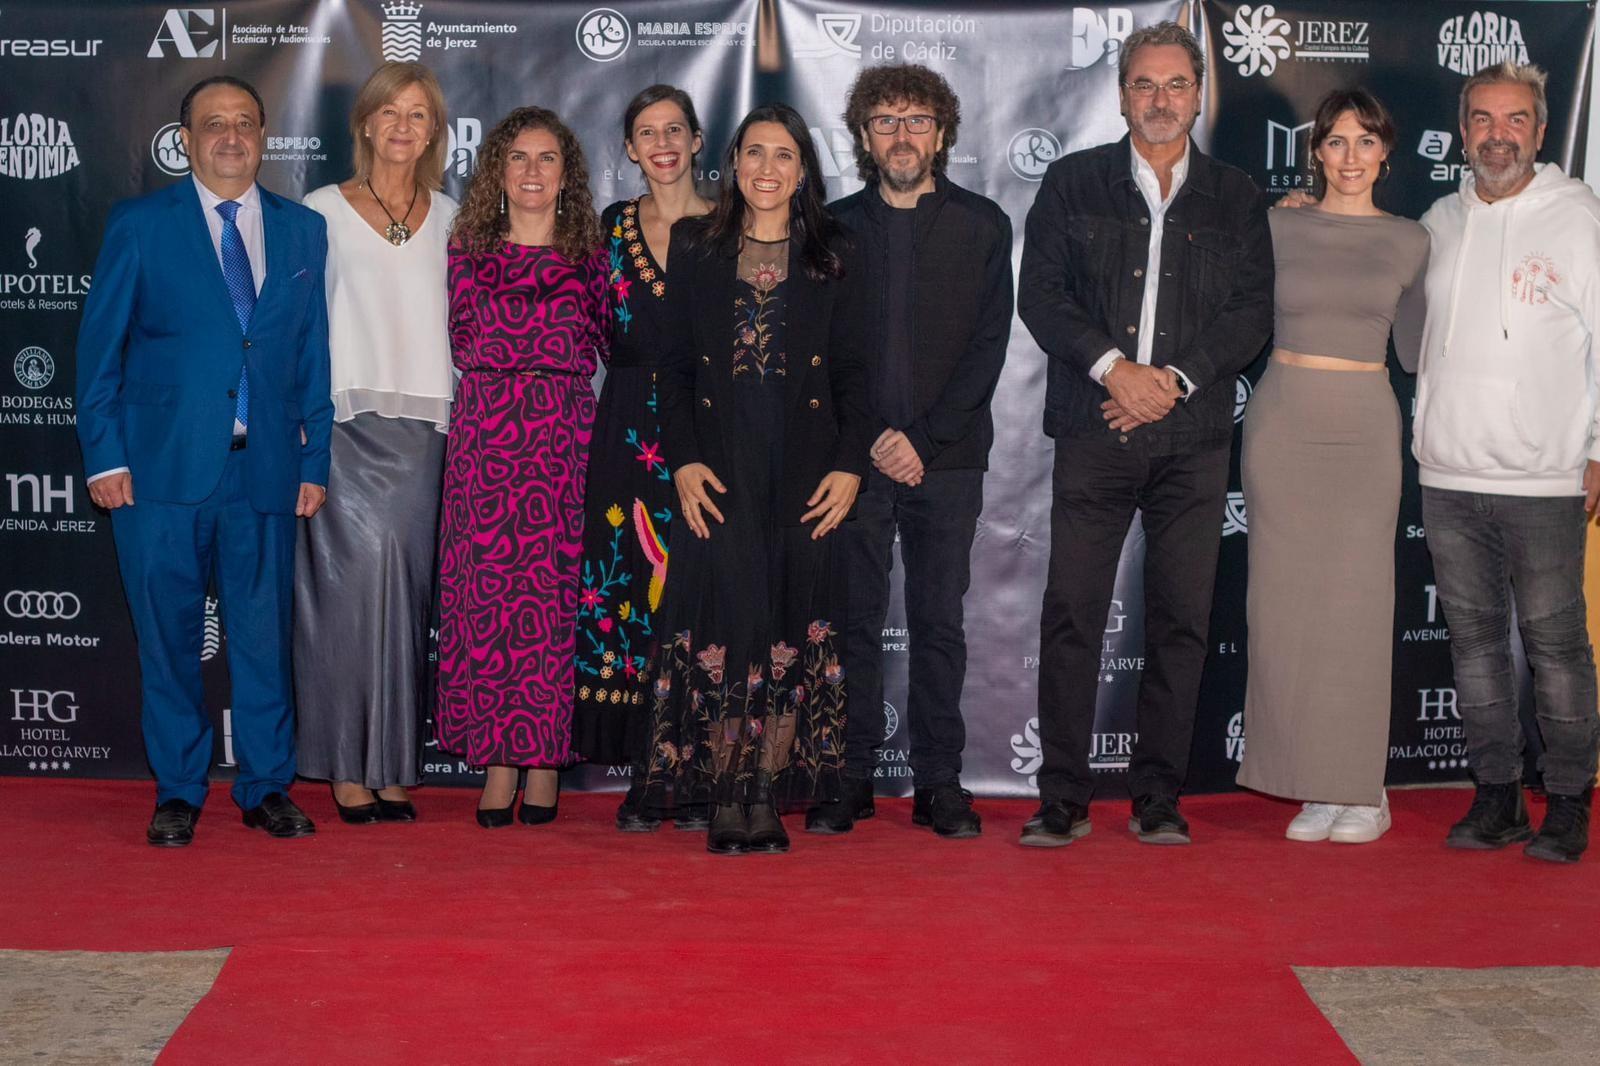 El Festival del Cine de Jerez 'Con Acento' reúne a cerca de mil asistentes en su primera edición